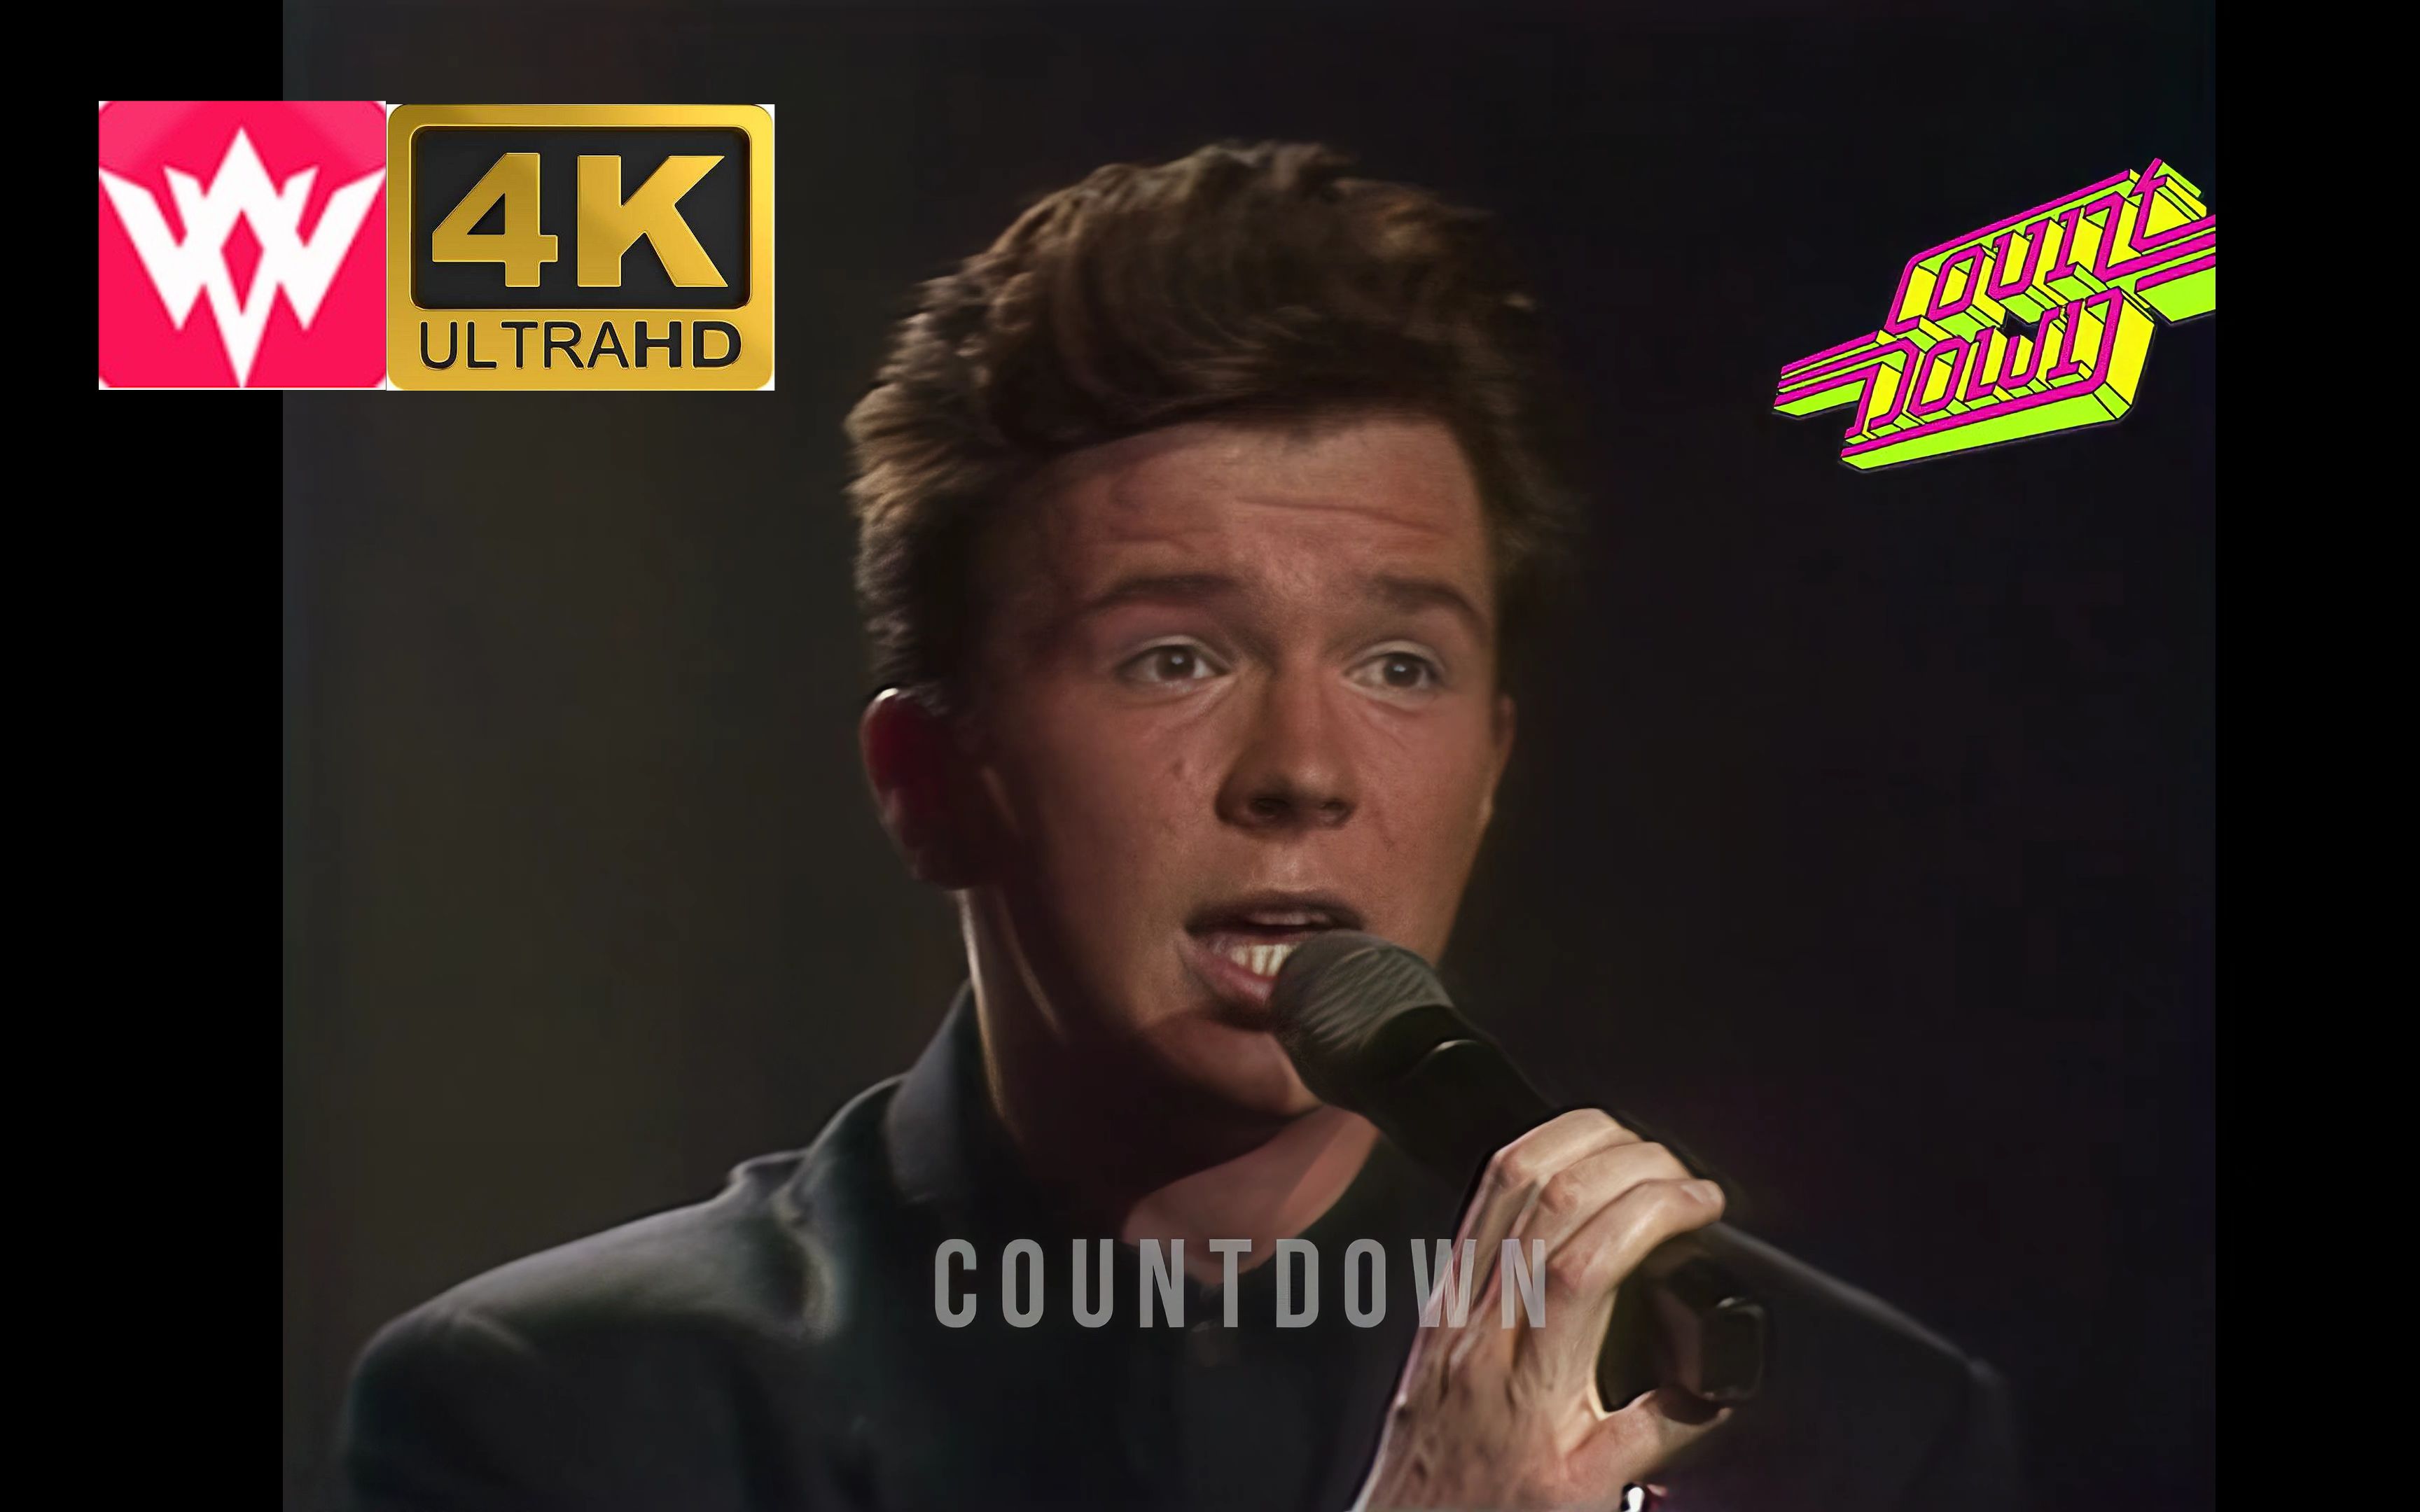 [图]【4K UHD】《Rick Astley - Never Gonna Give You Up》 (Countdown, 1987)永不放弃你，TV版修复